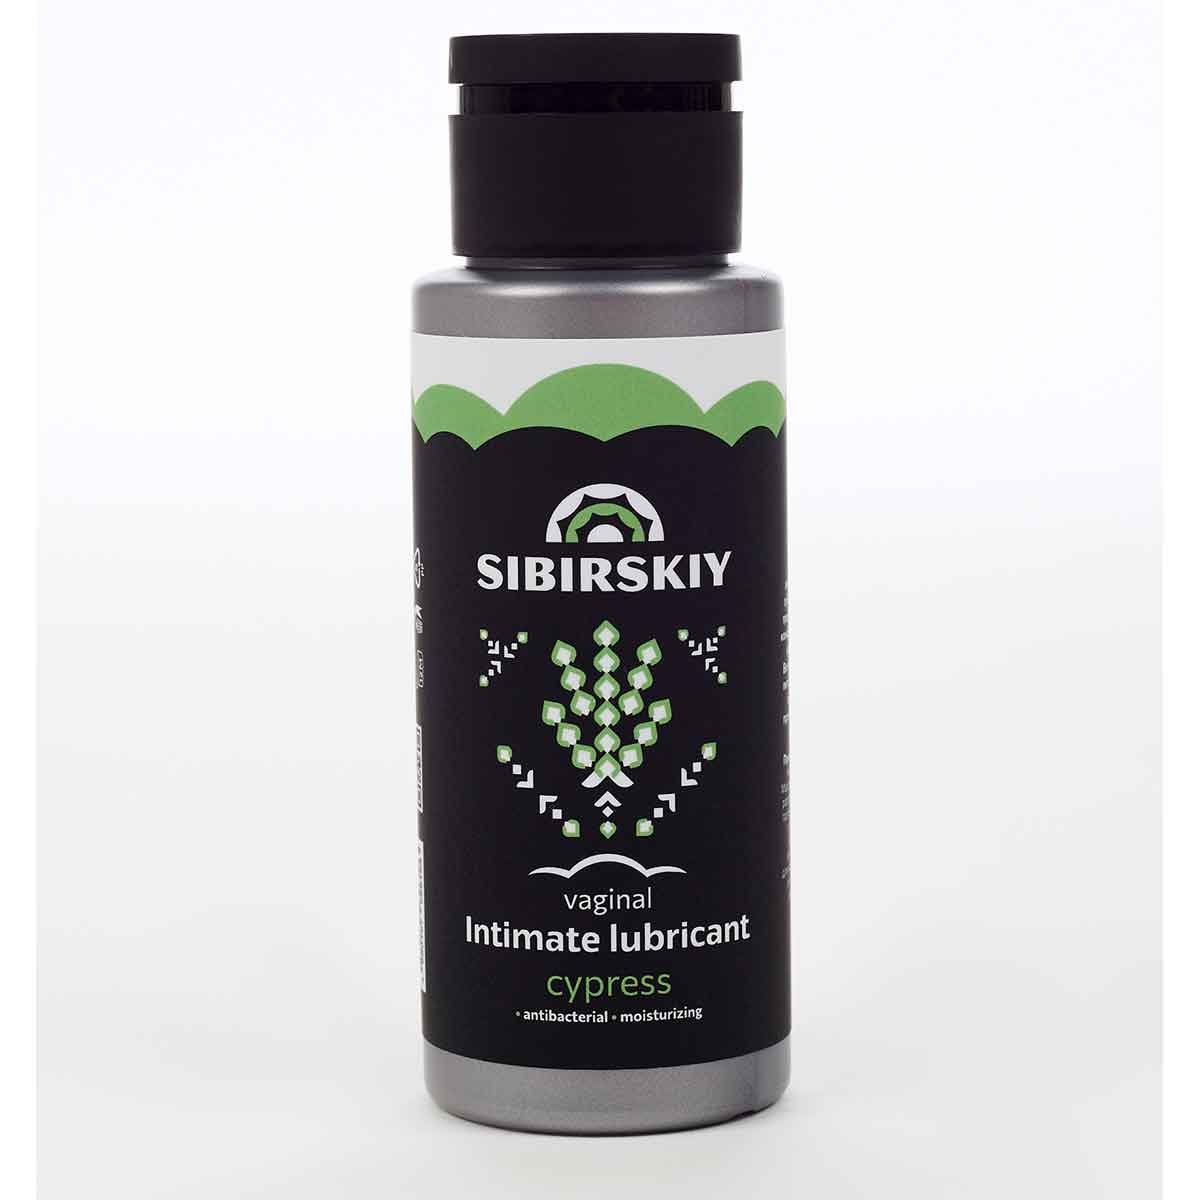 SIBIRSKIY - Интимный антибактериальный вагинальный лубрикант с ароматом кипариса, 100 мл